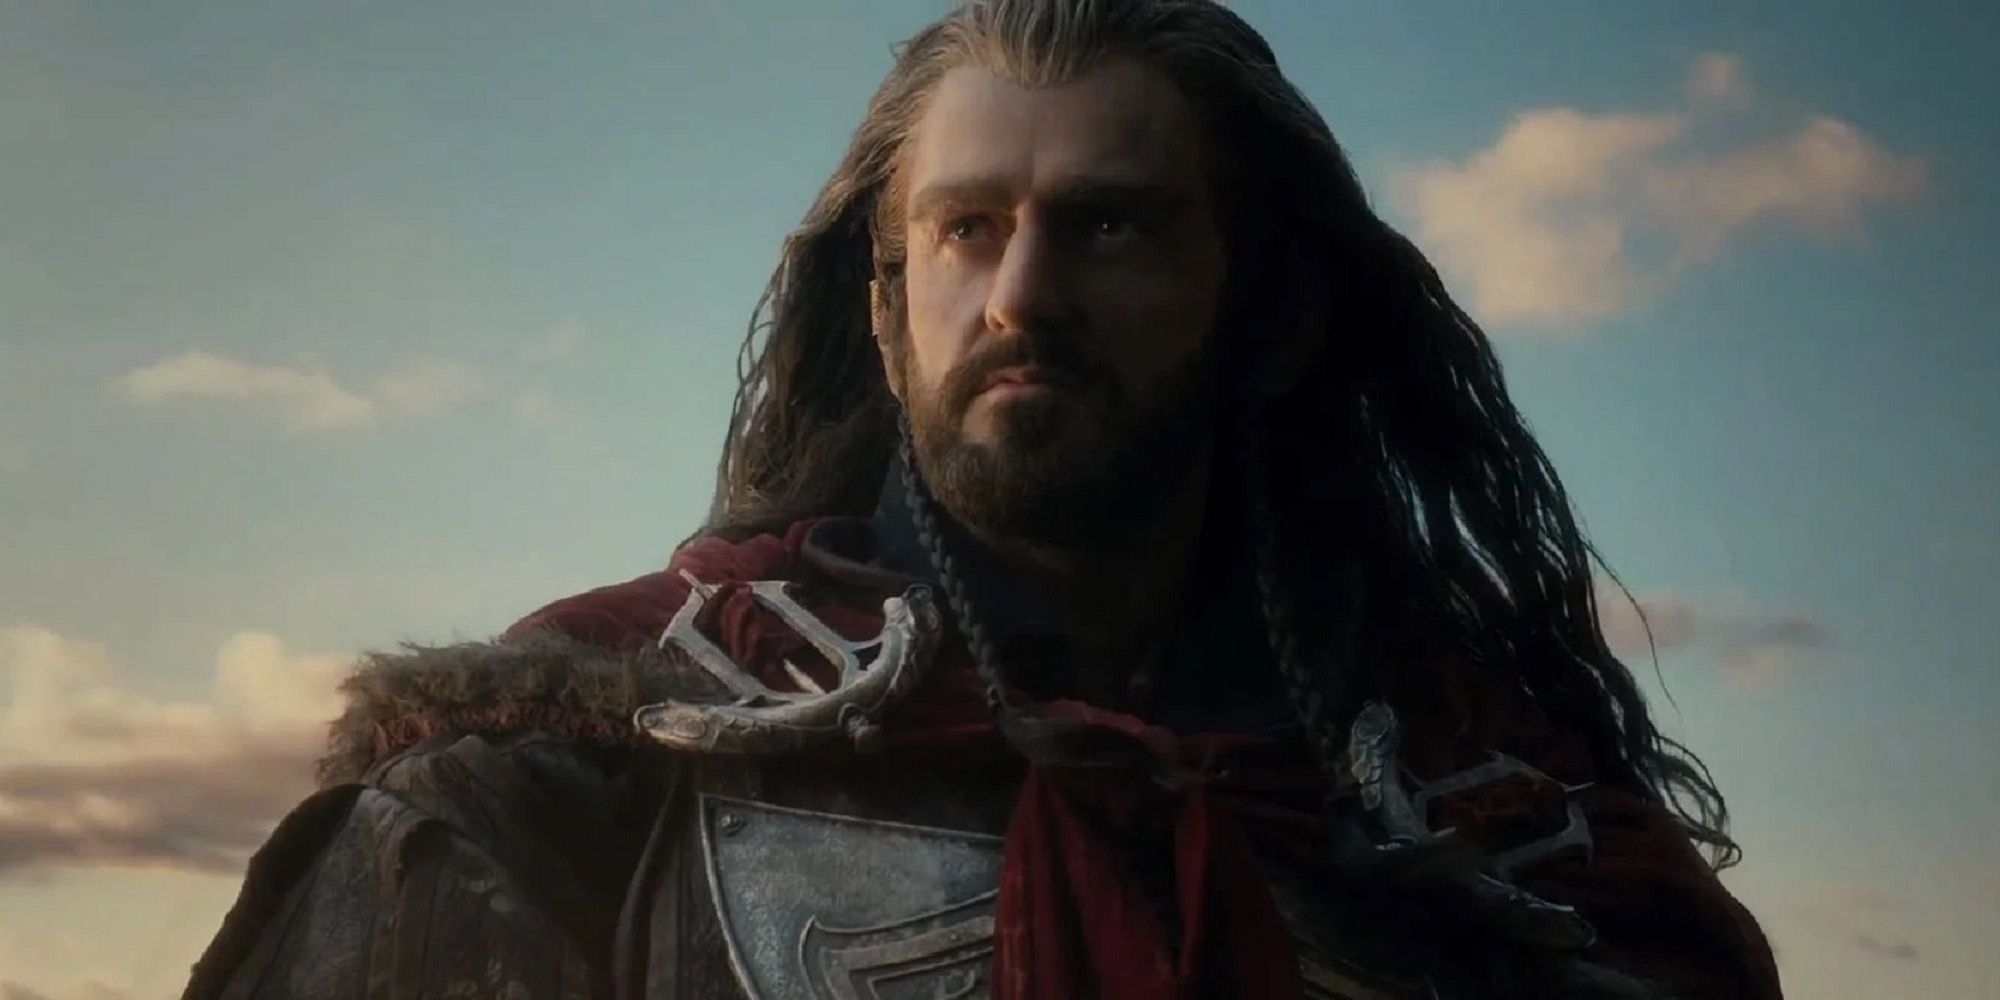 Thorin II Oakenshield in The Hobbit.